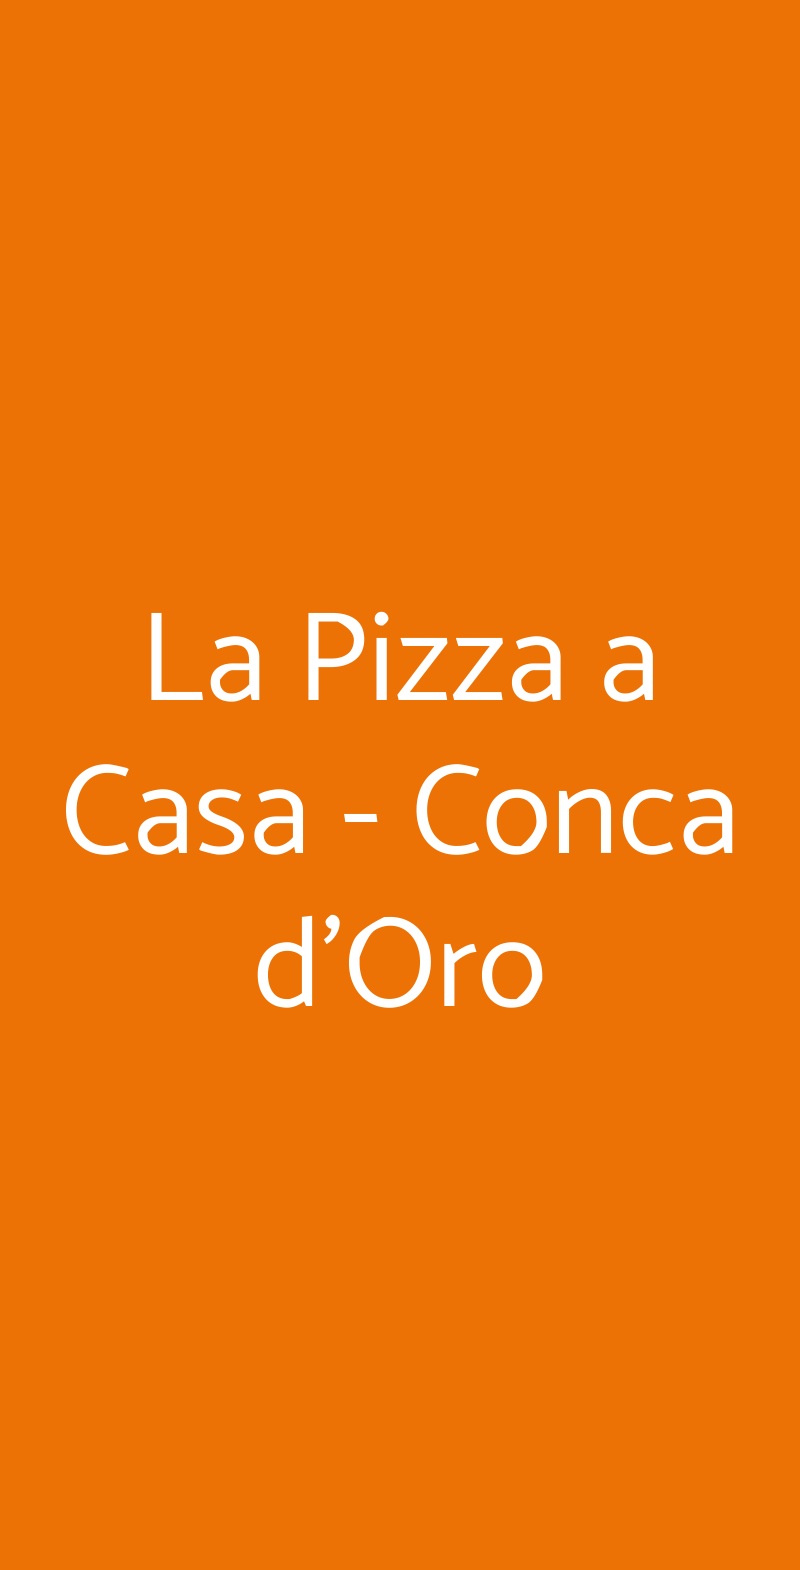 La Pizza a Casa - Conca d'Oro Roma menù 1 pagina